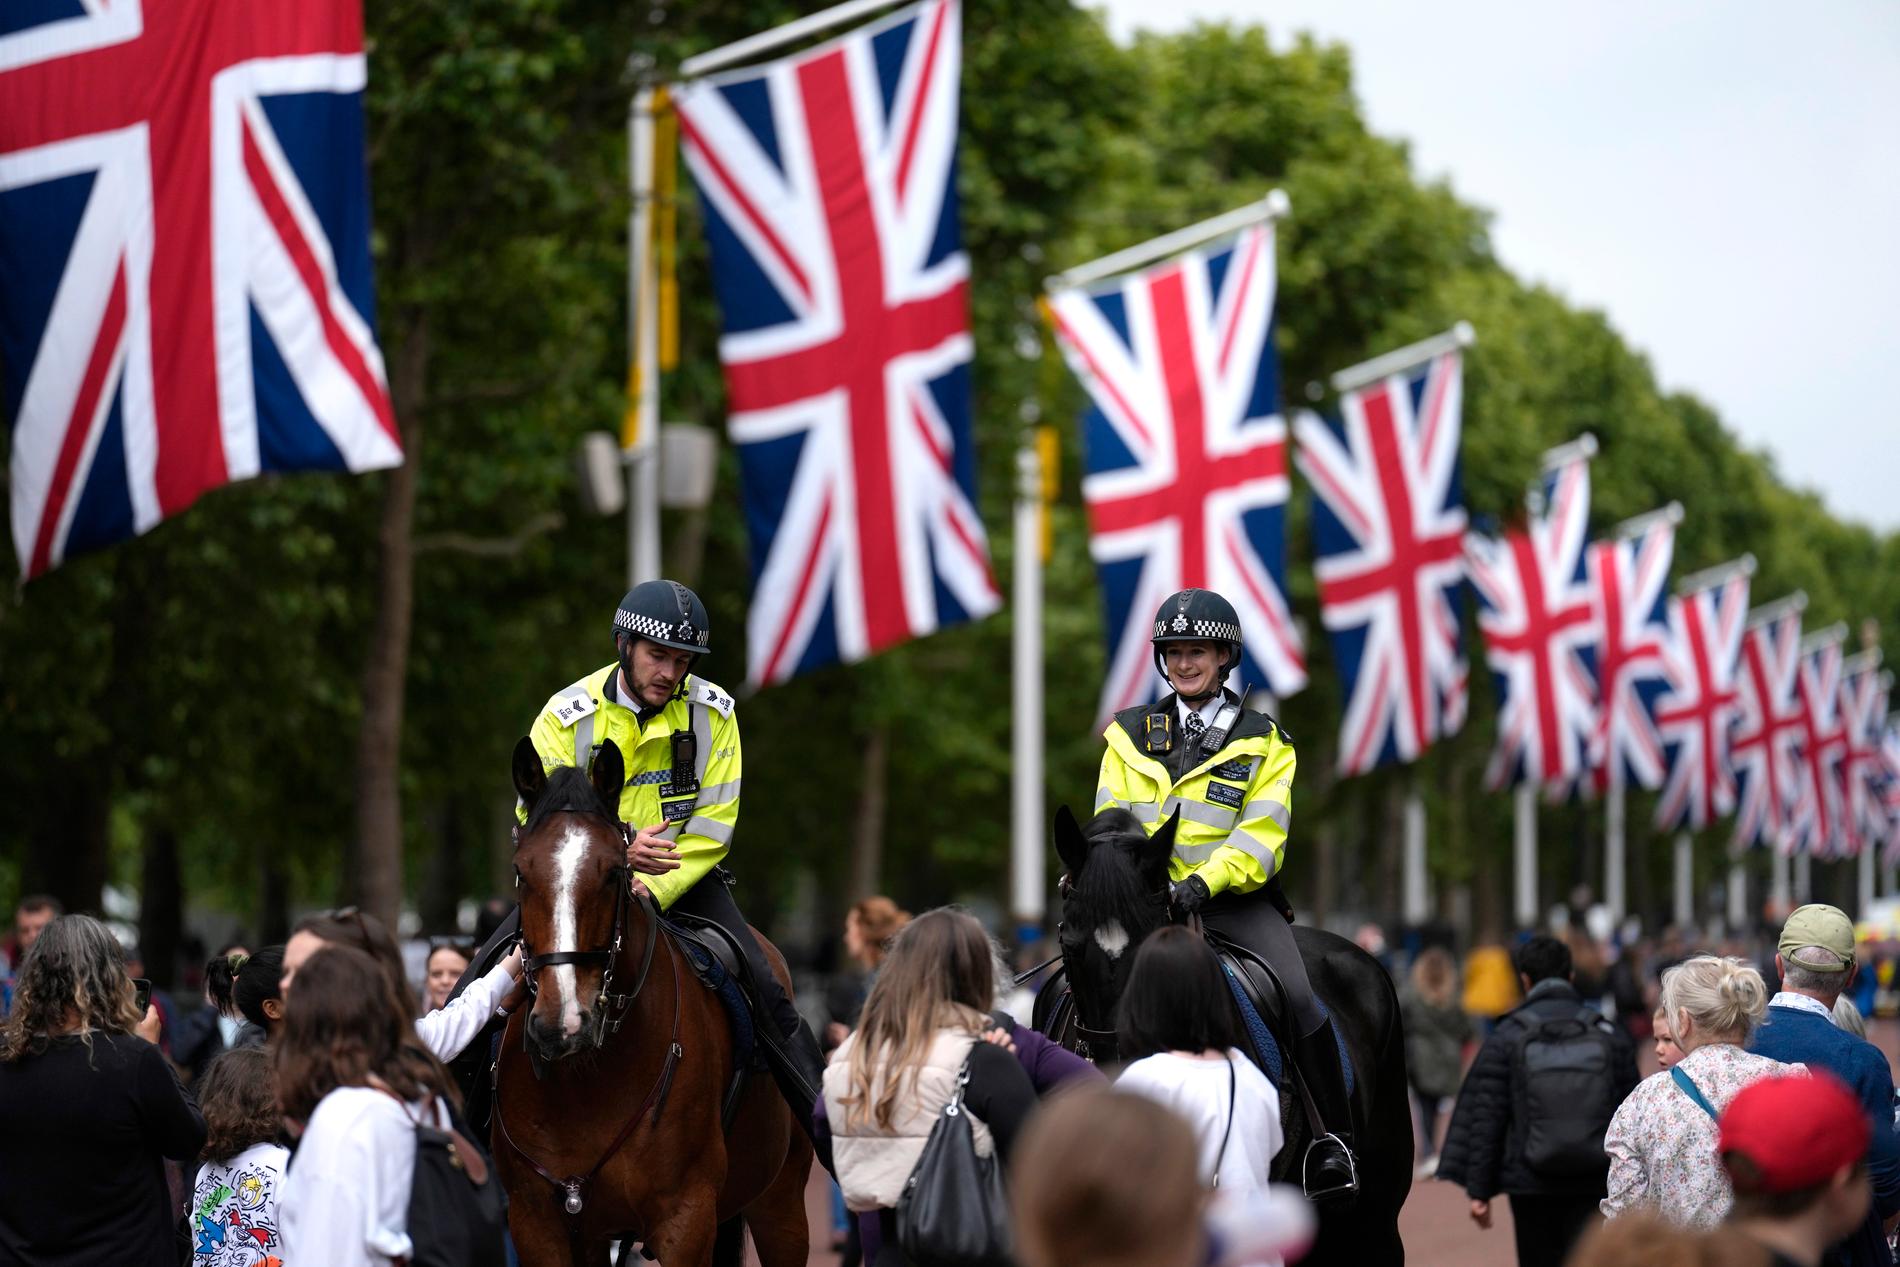 Ridande polis och människor samlas inför firandet i London.